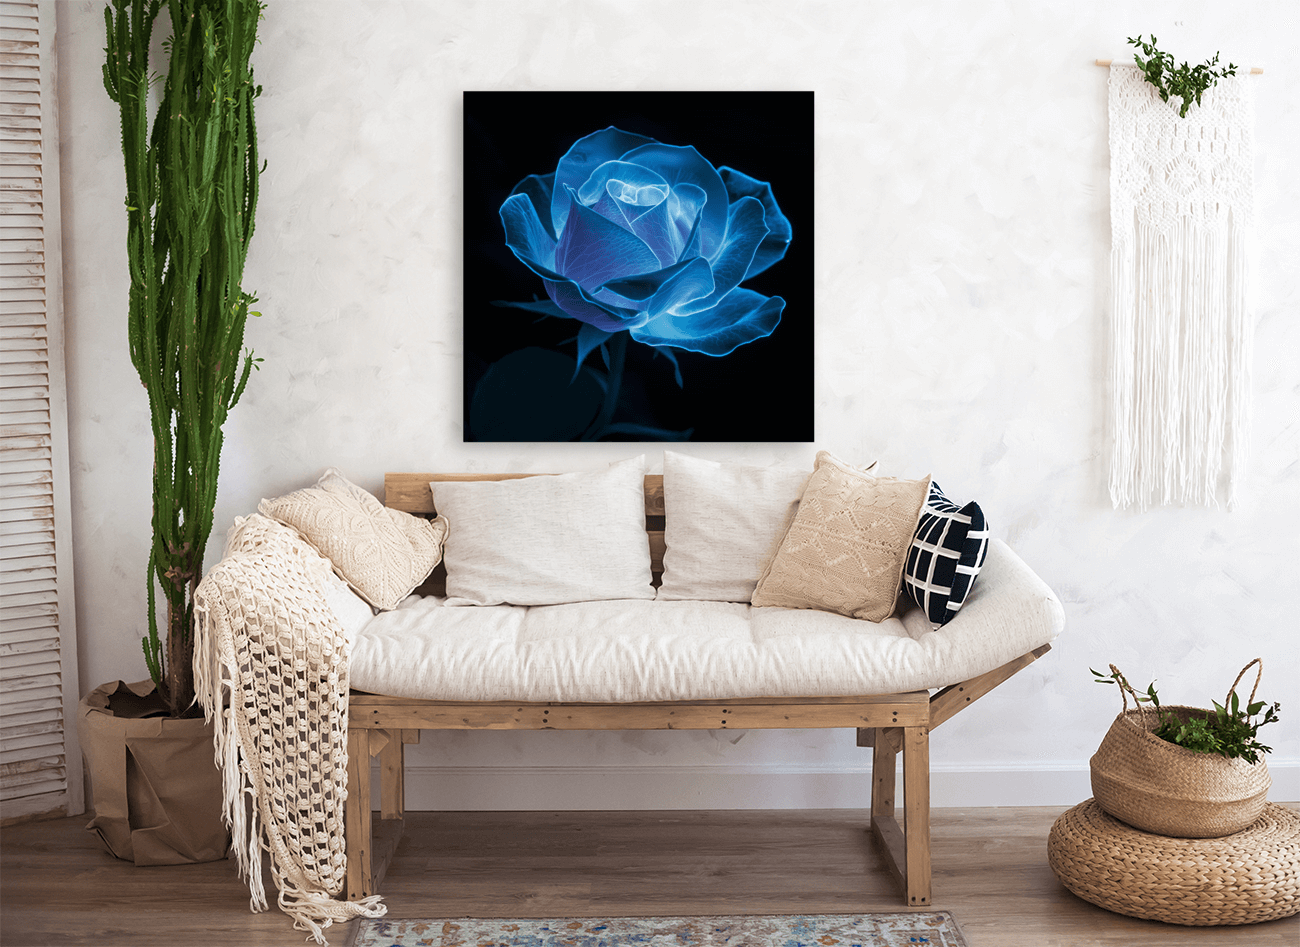 Floral Sophistication Bioluminescent Rose on Black Background Downloadable / Printable Digital Artwork